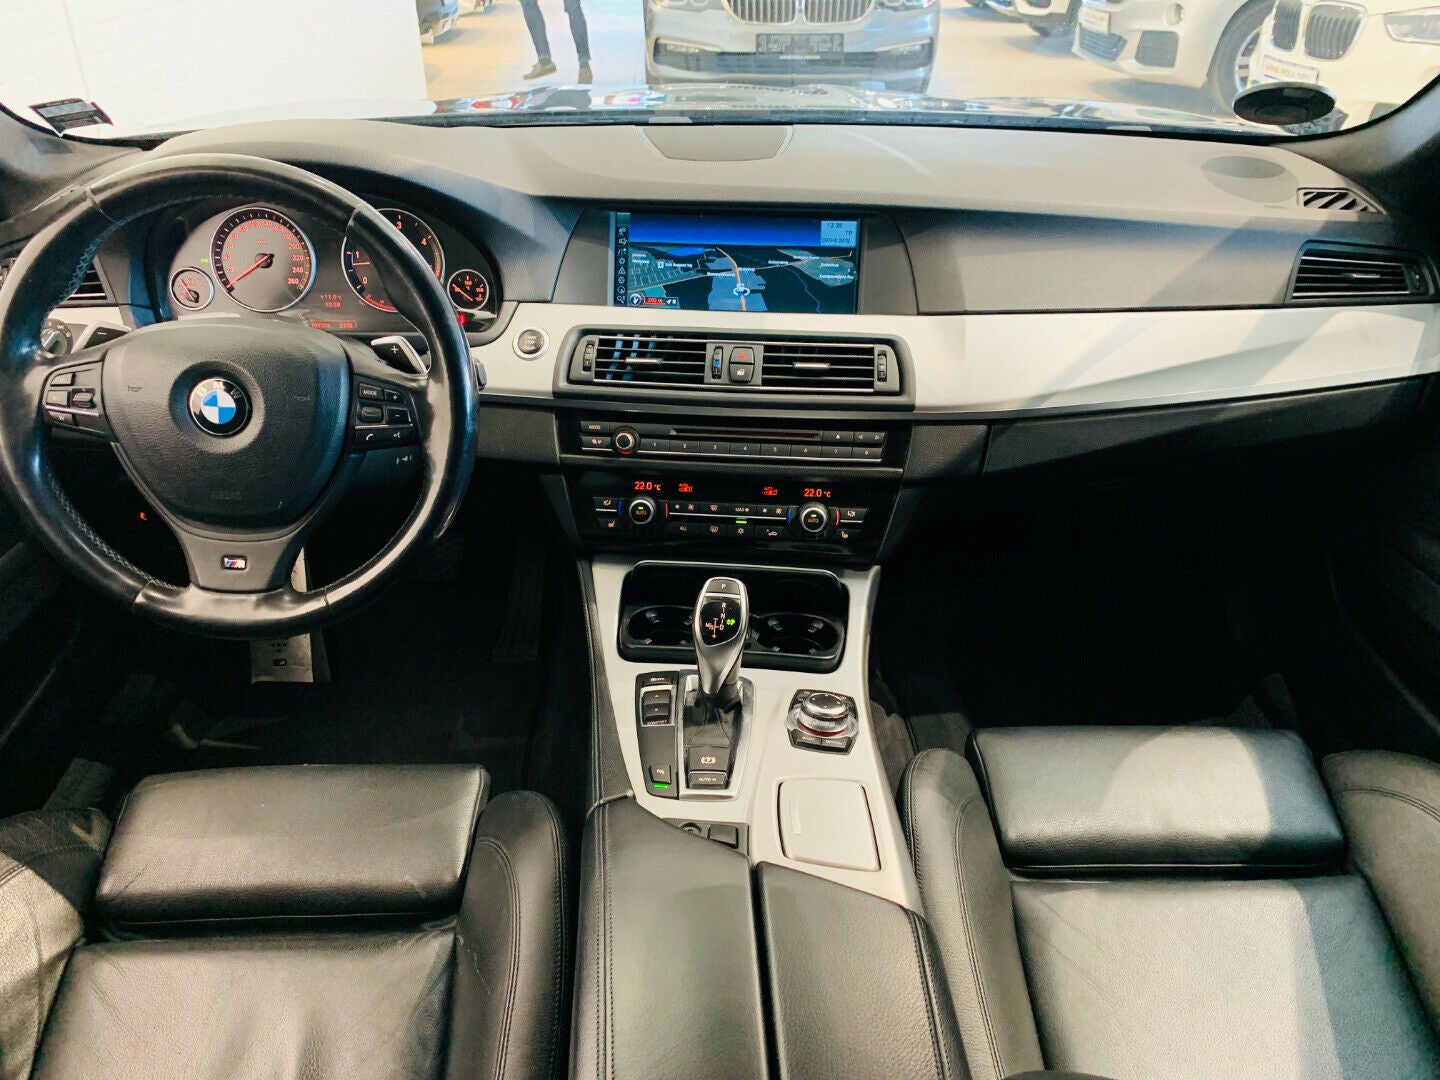 BMW 535d 3,0 Touring M-Sport aut.,  5-dørs